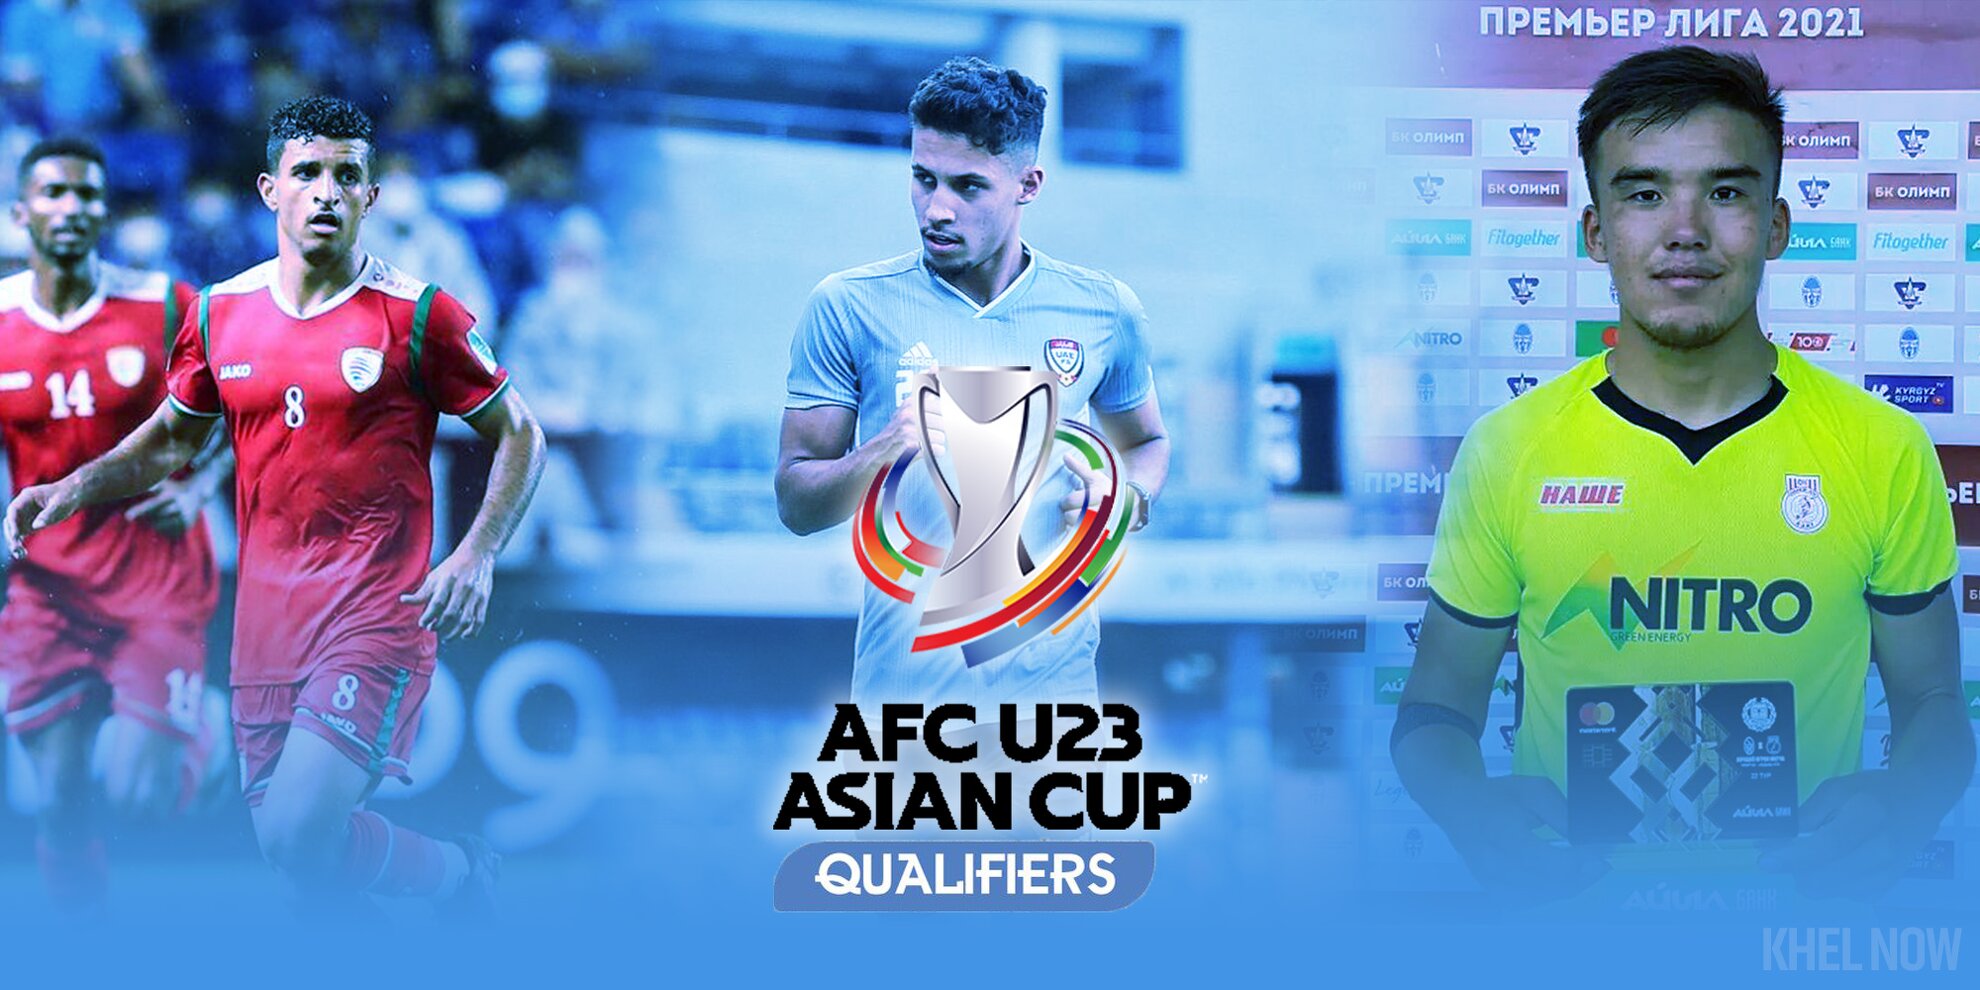 AFC U-23 Asian Cup Qualifiers